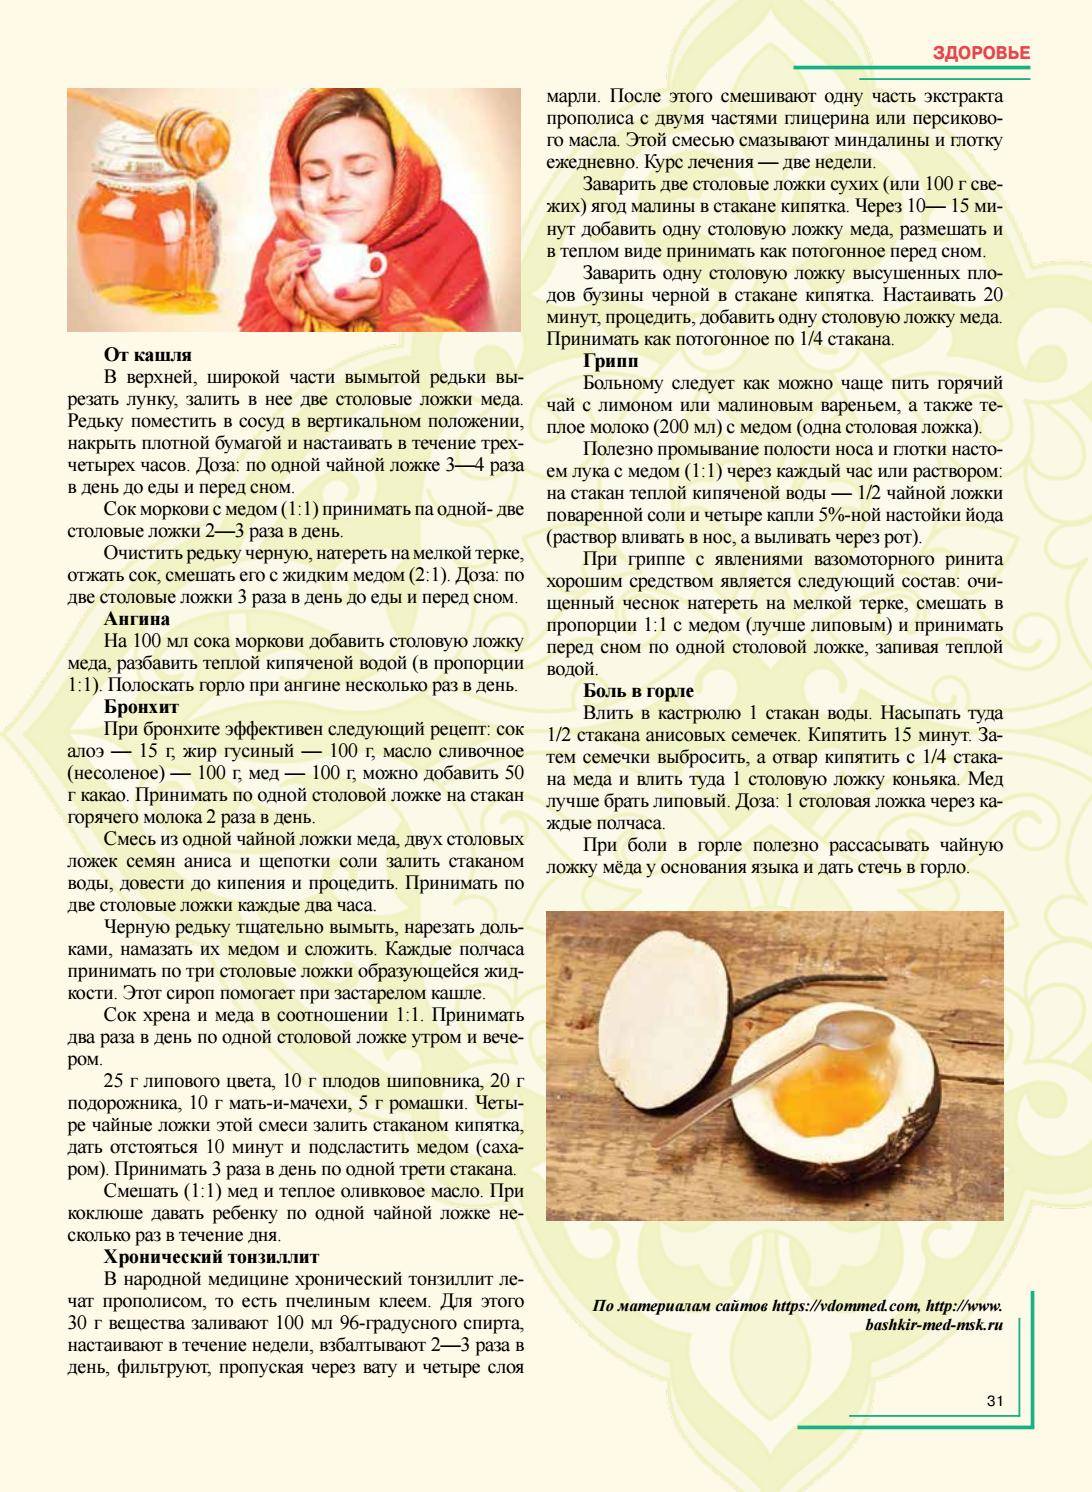 Белая редька от кашля: рецепты с медом и другими ингредиентами, как приготовить, принимать и давать взрослому и ребенку?